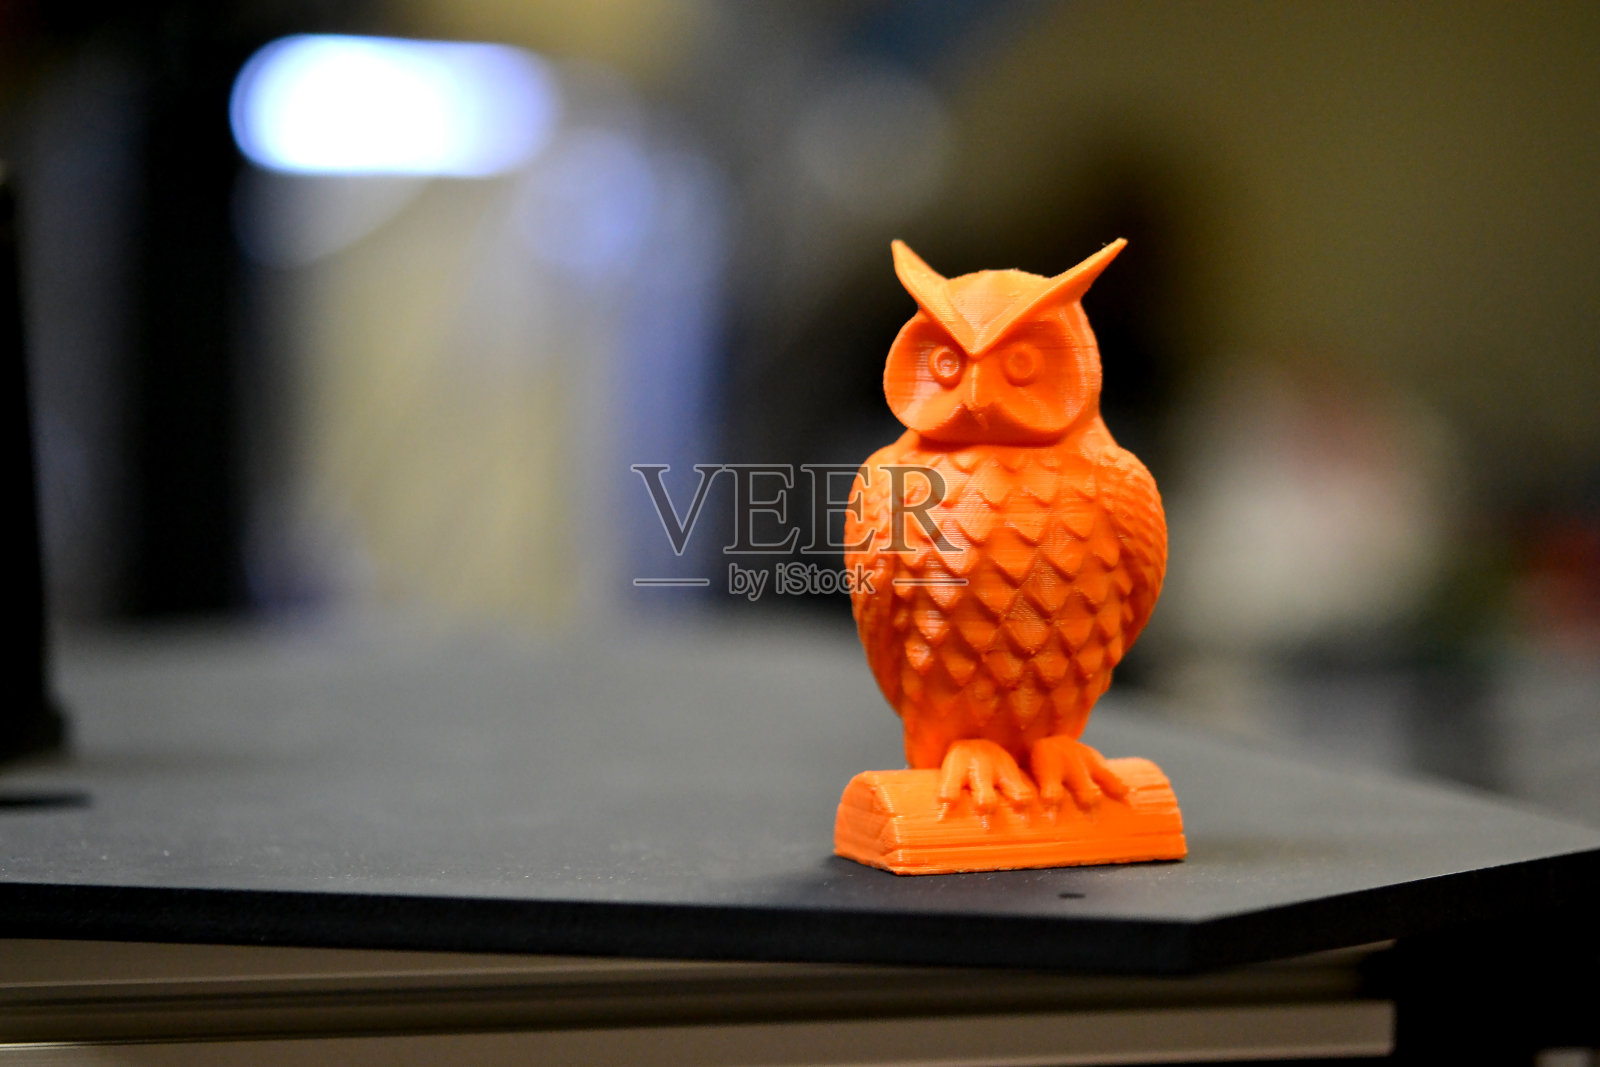 用3d打印机打印出的橙色猫头鹰物体站在模糊的黑色背景上照片摄影图片